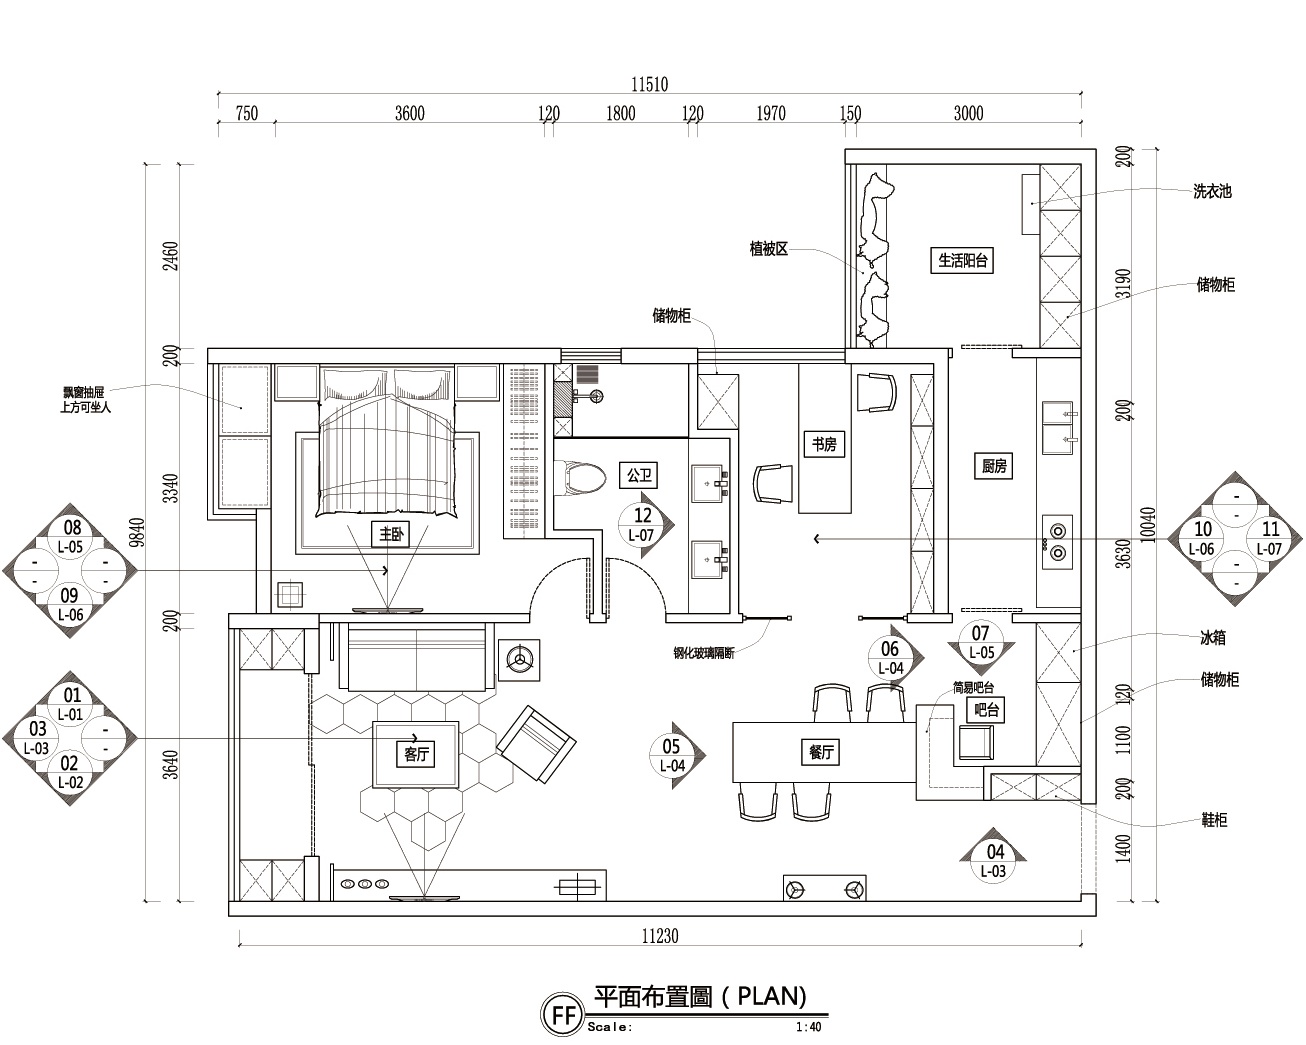 施工图私人住宅装修效果图 空间划分:一居室 结构类型:平层 图纸深度